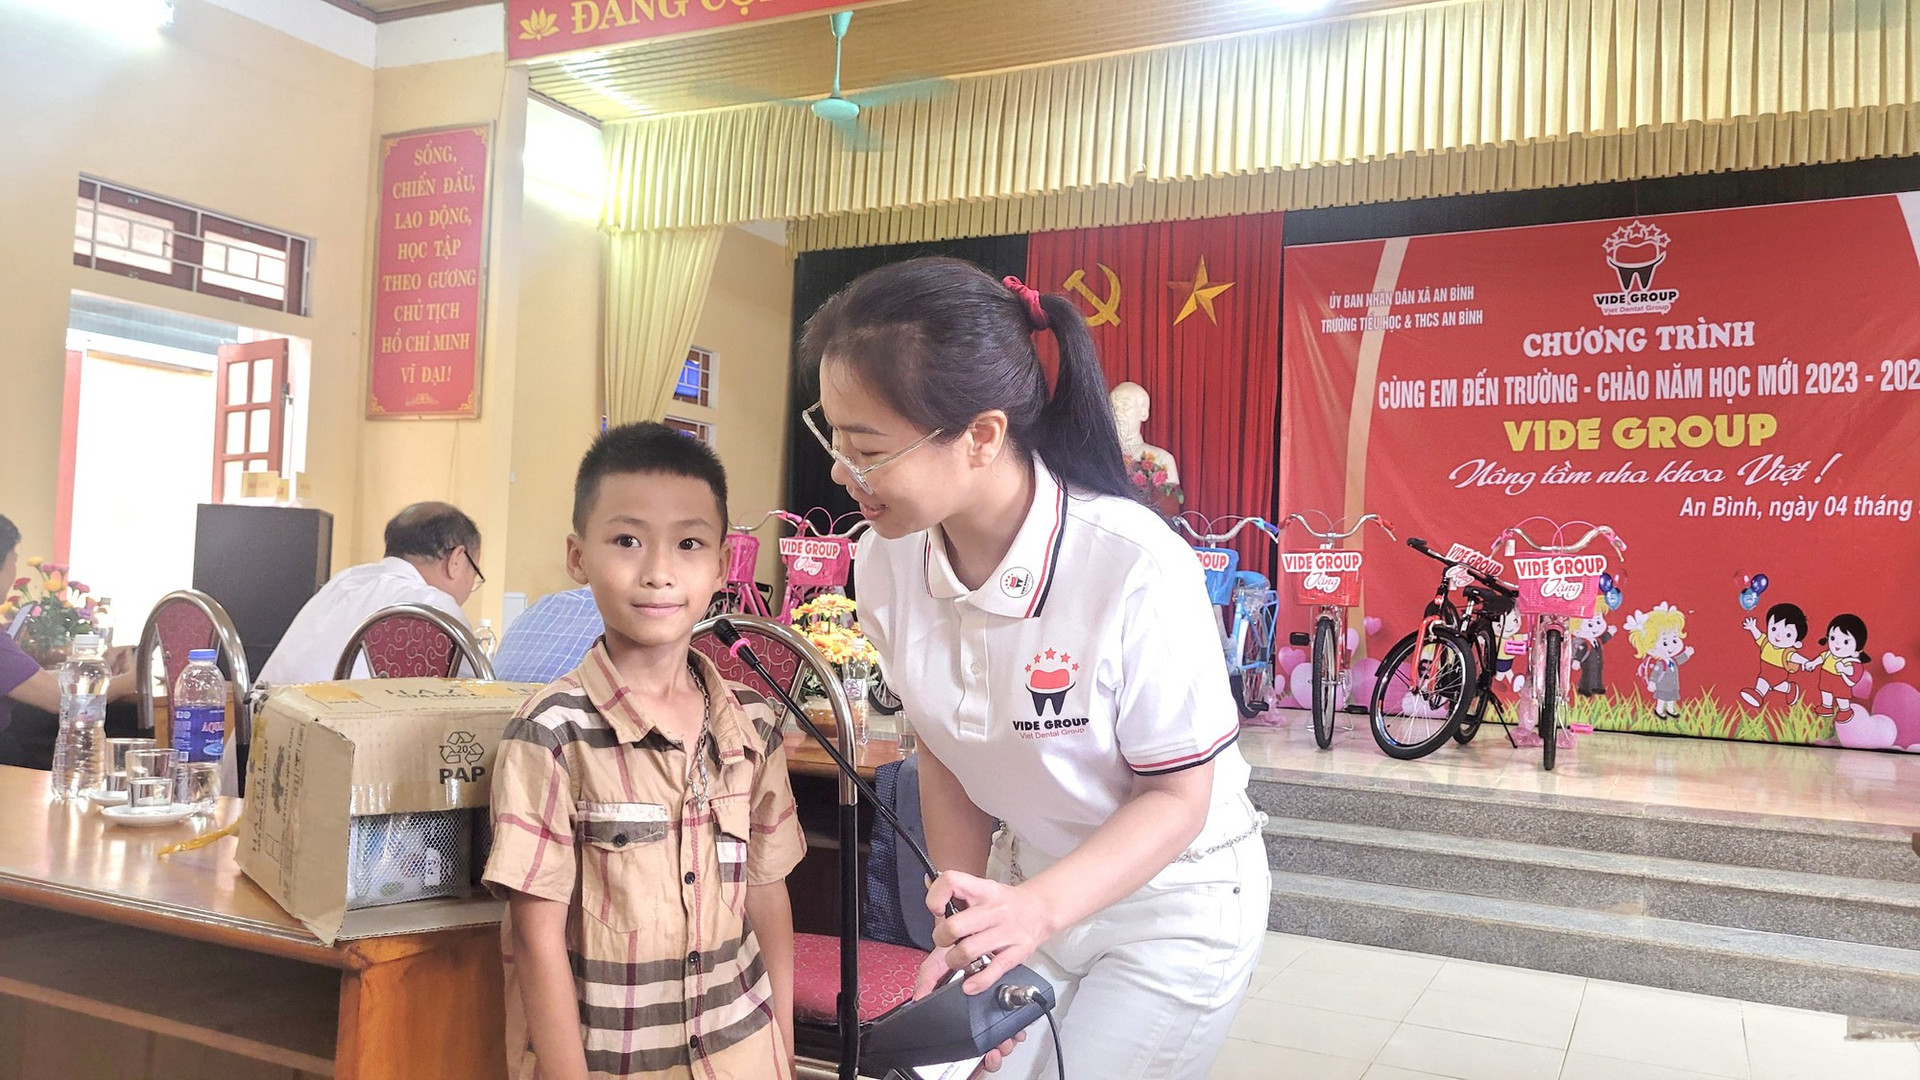 Cộng đồng Nha khoa Việt trao tặng nhiều phần quà ý nghĩa “Cùng em đến trường” - Ảnh 5.